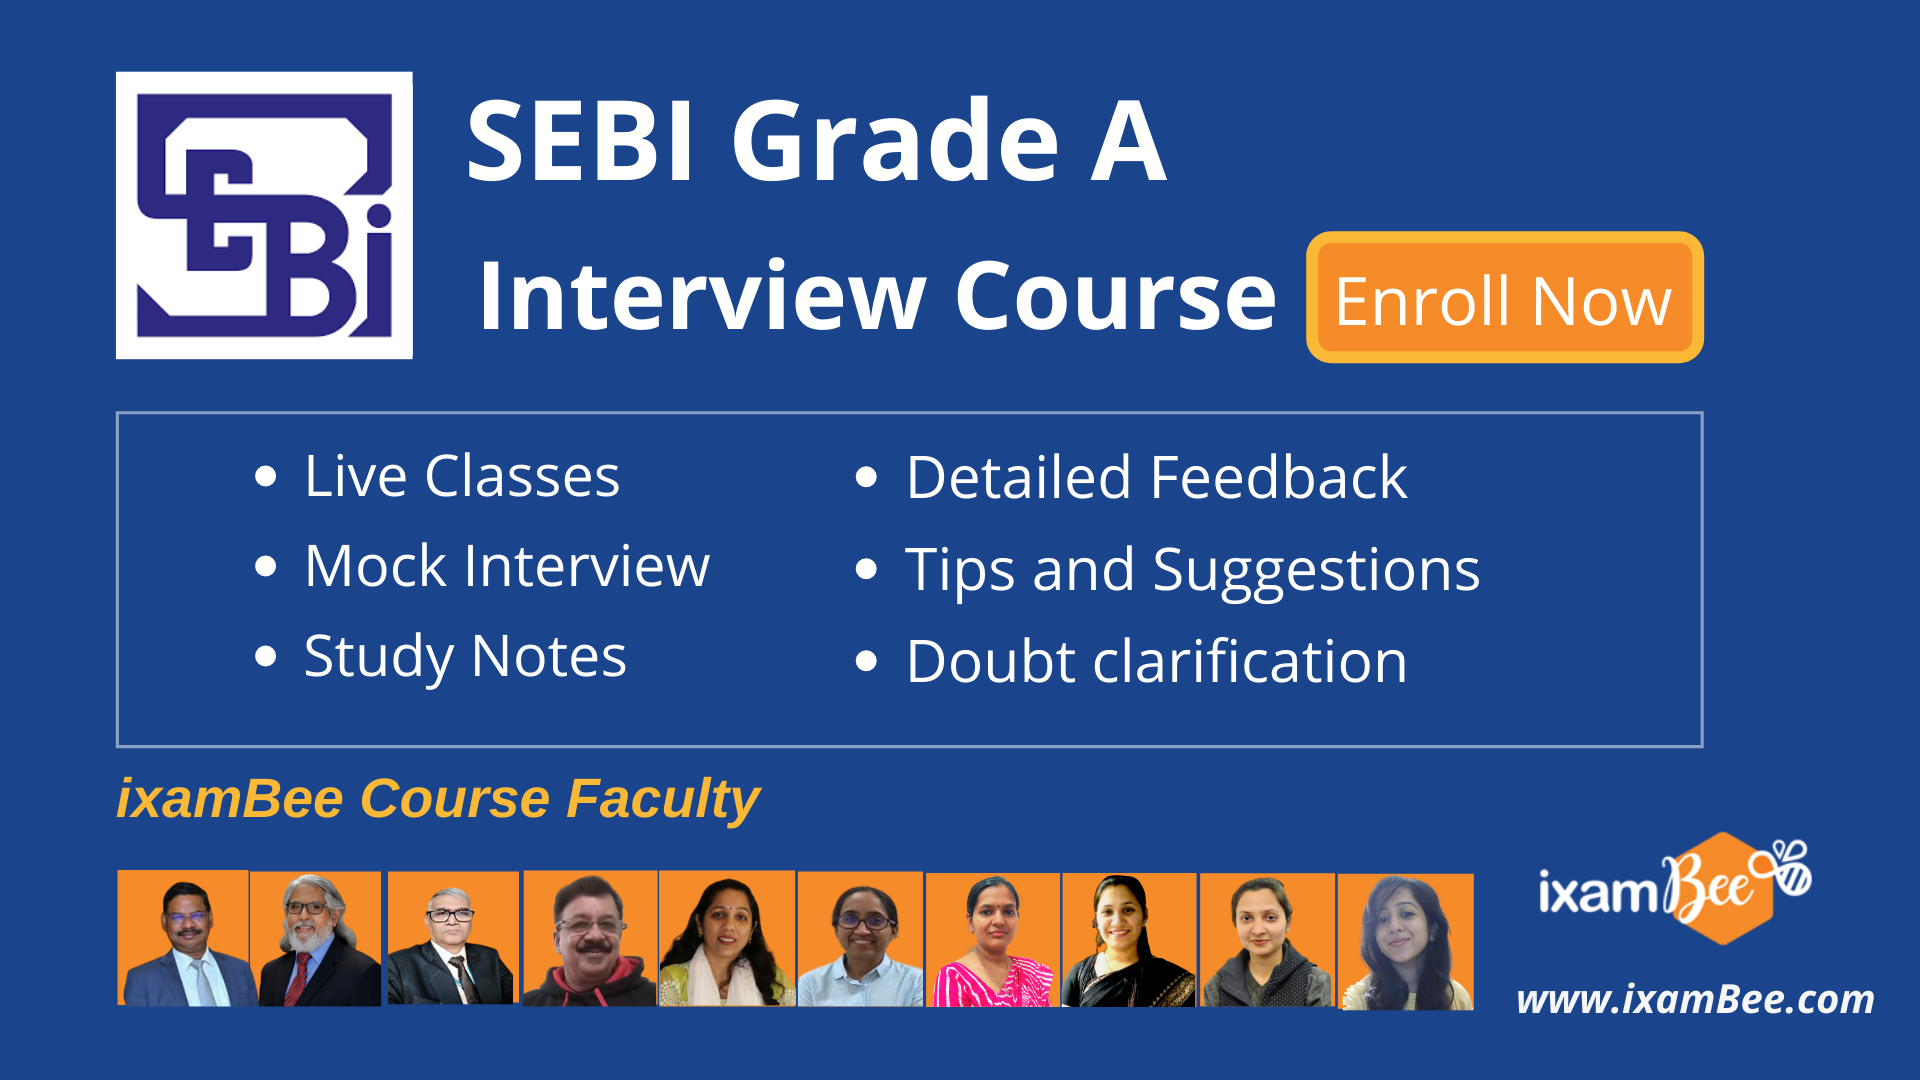 SEBI Grade A Interview course